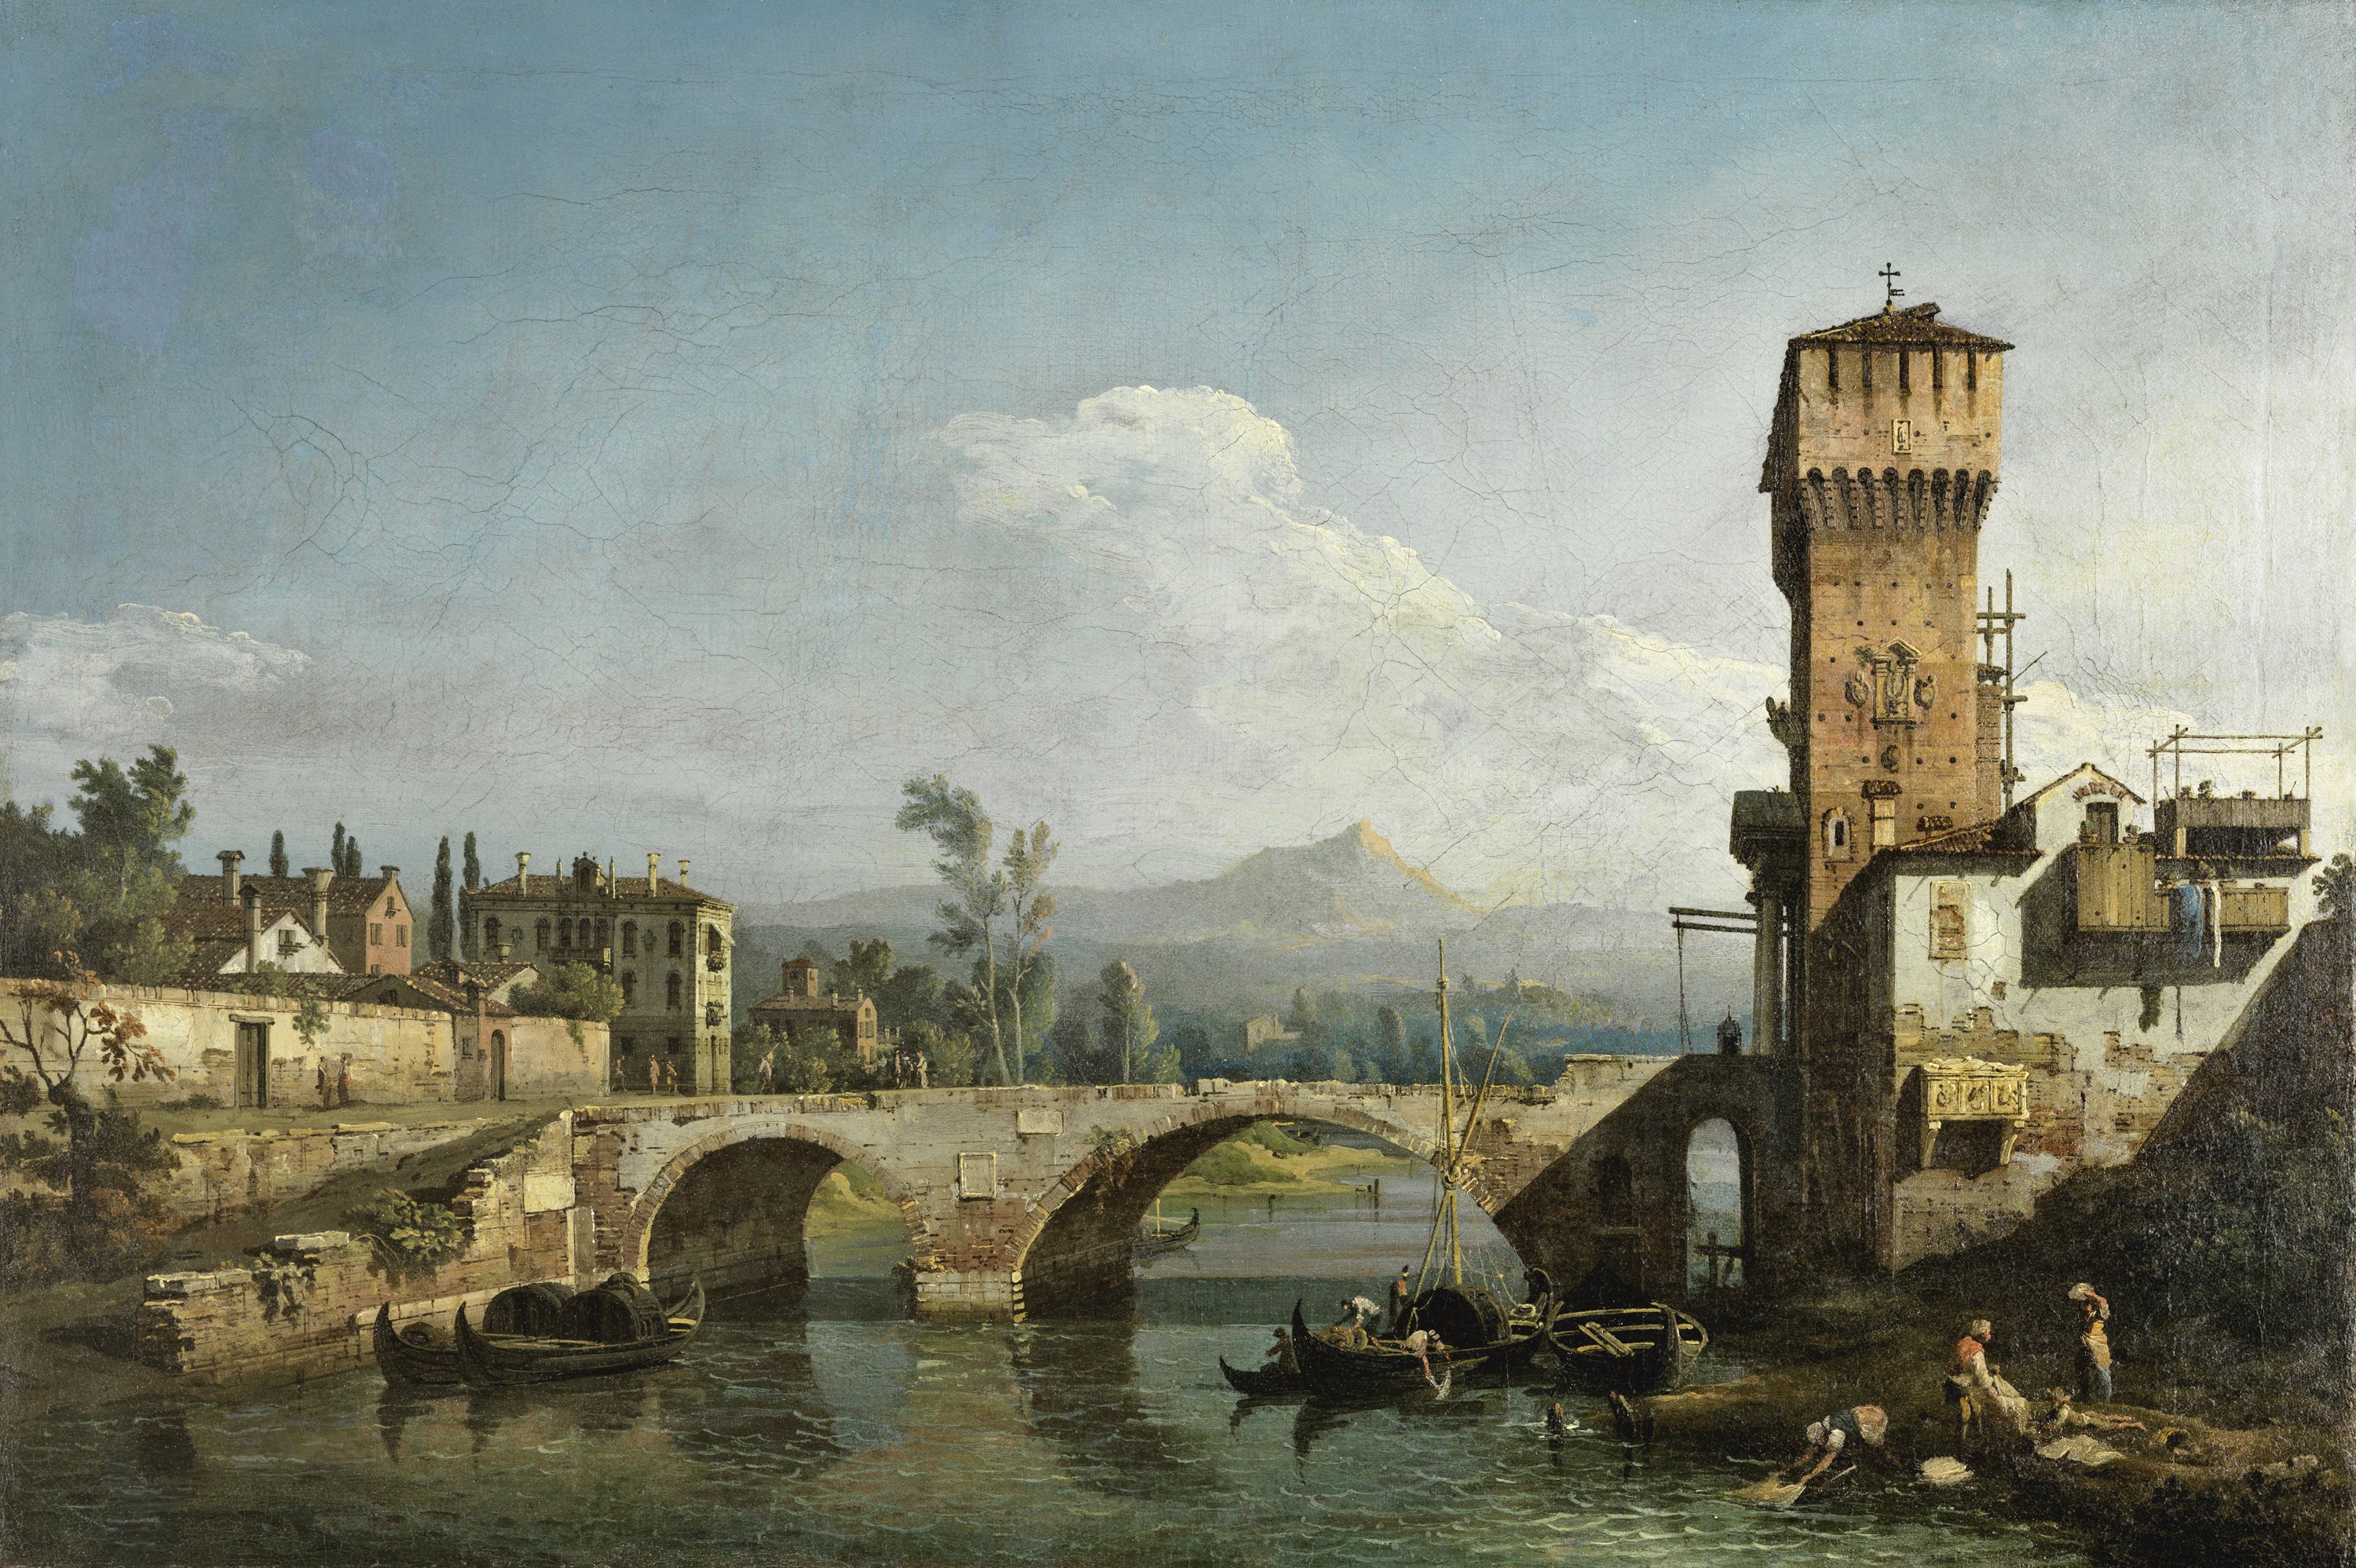 Capriccio with a River and Bridge. Capricho con río y puente, c. 1745